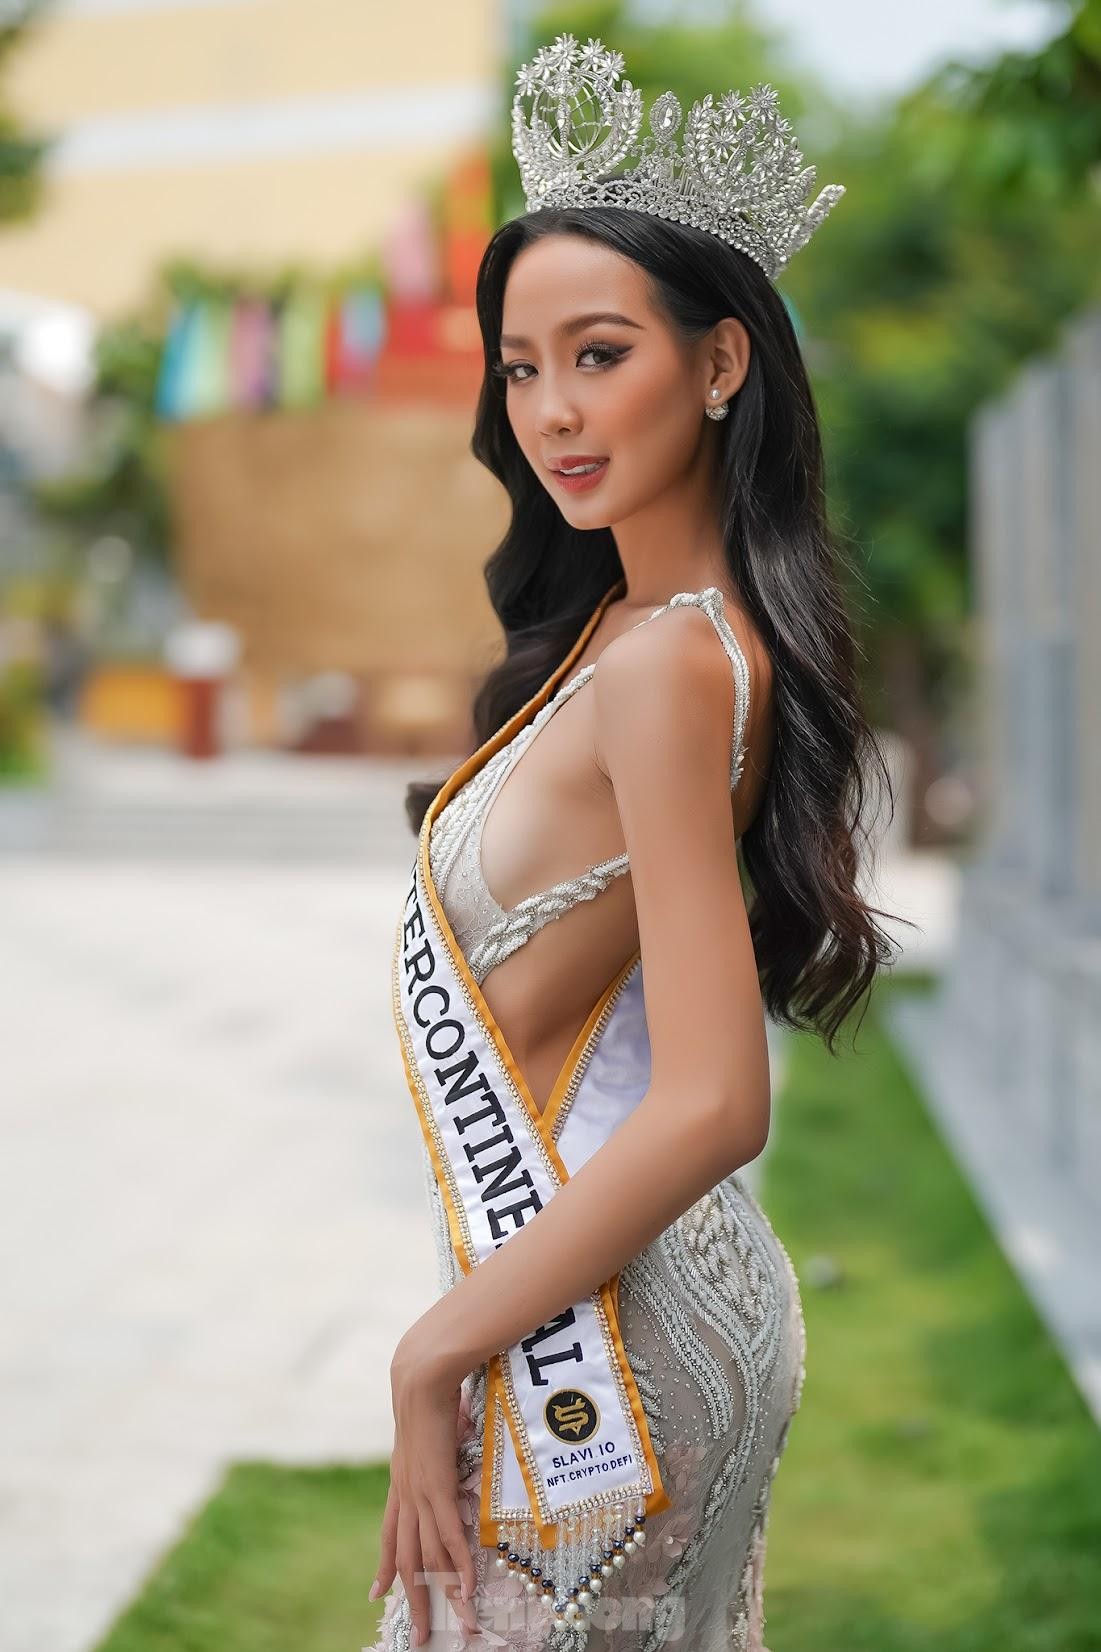 Hoa hậu Bảo Ngọc: 'Tôi sụt 3 kg sau khi đăng quang' ảnh 8